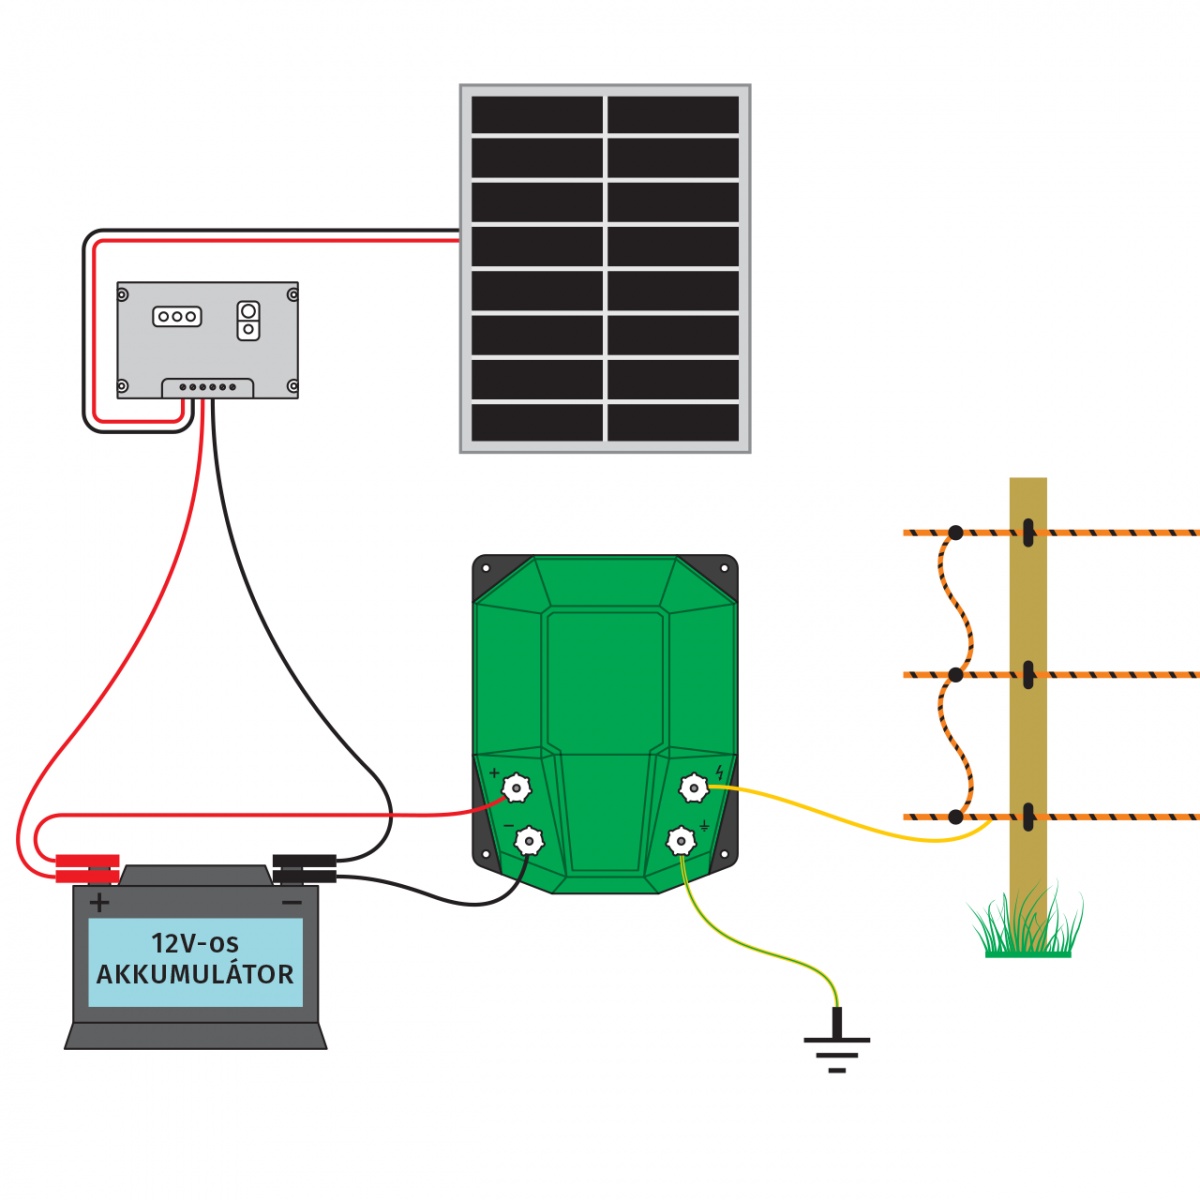 DL 4500 villanypásztor készülék, 12 V, 4,5 Joule, napelemes rendszerrel